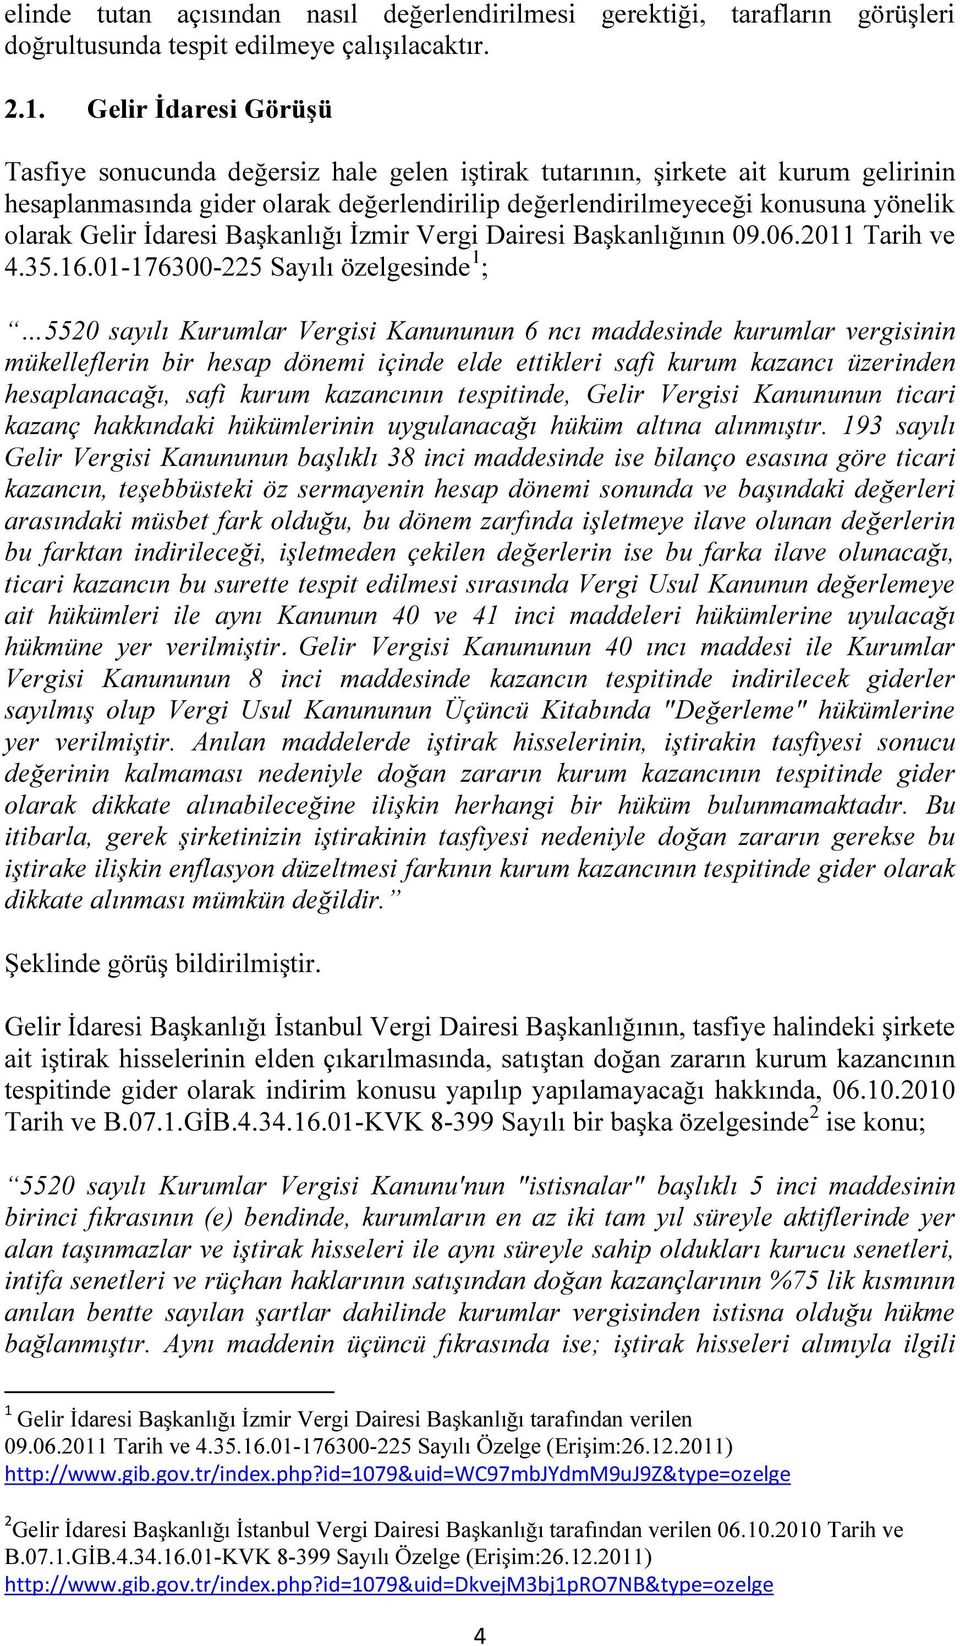 Gelir İdaresi Başkanlığı İzmir Vergi Dairesi Başkanlığının 09.06.2011 Tarih ve 4.35.16.